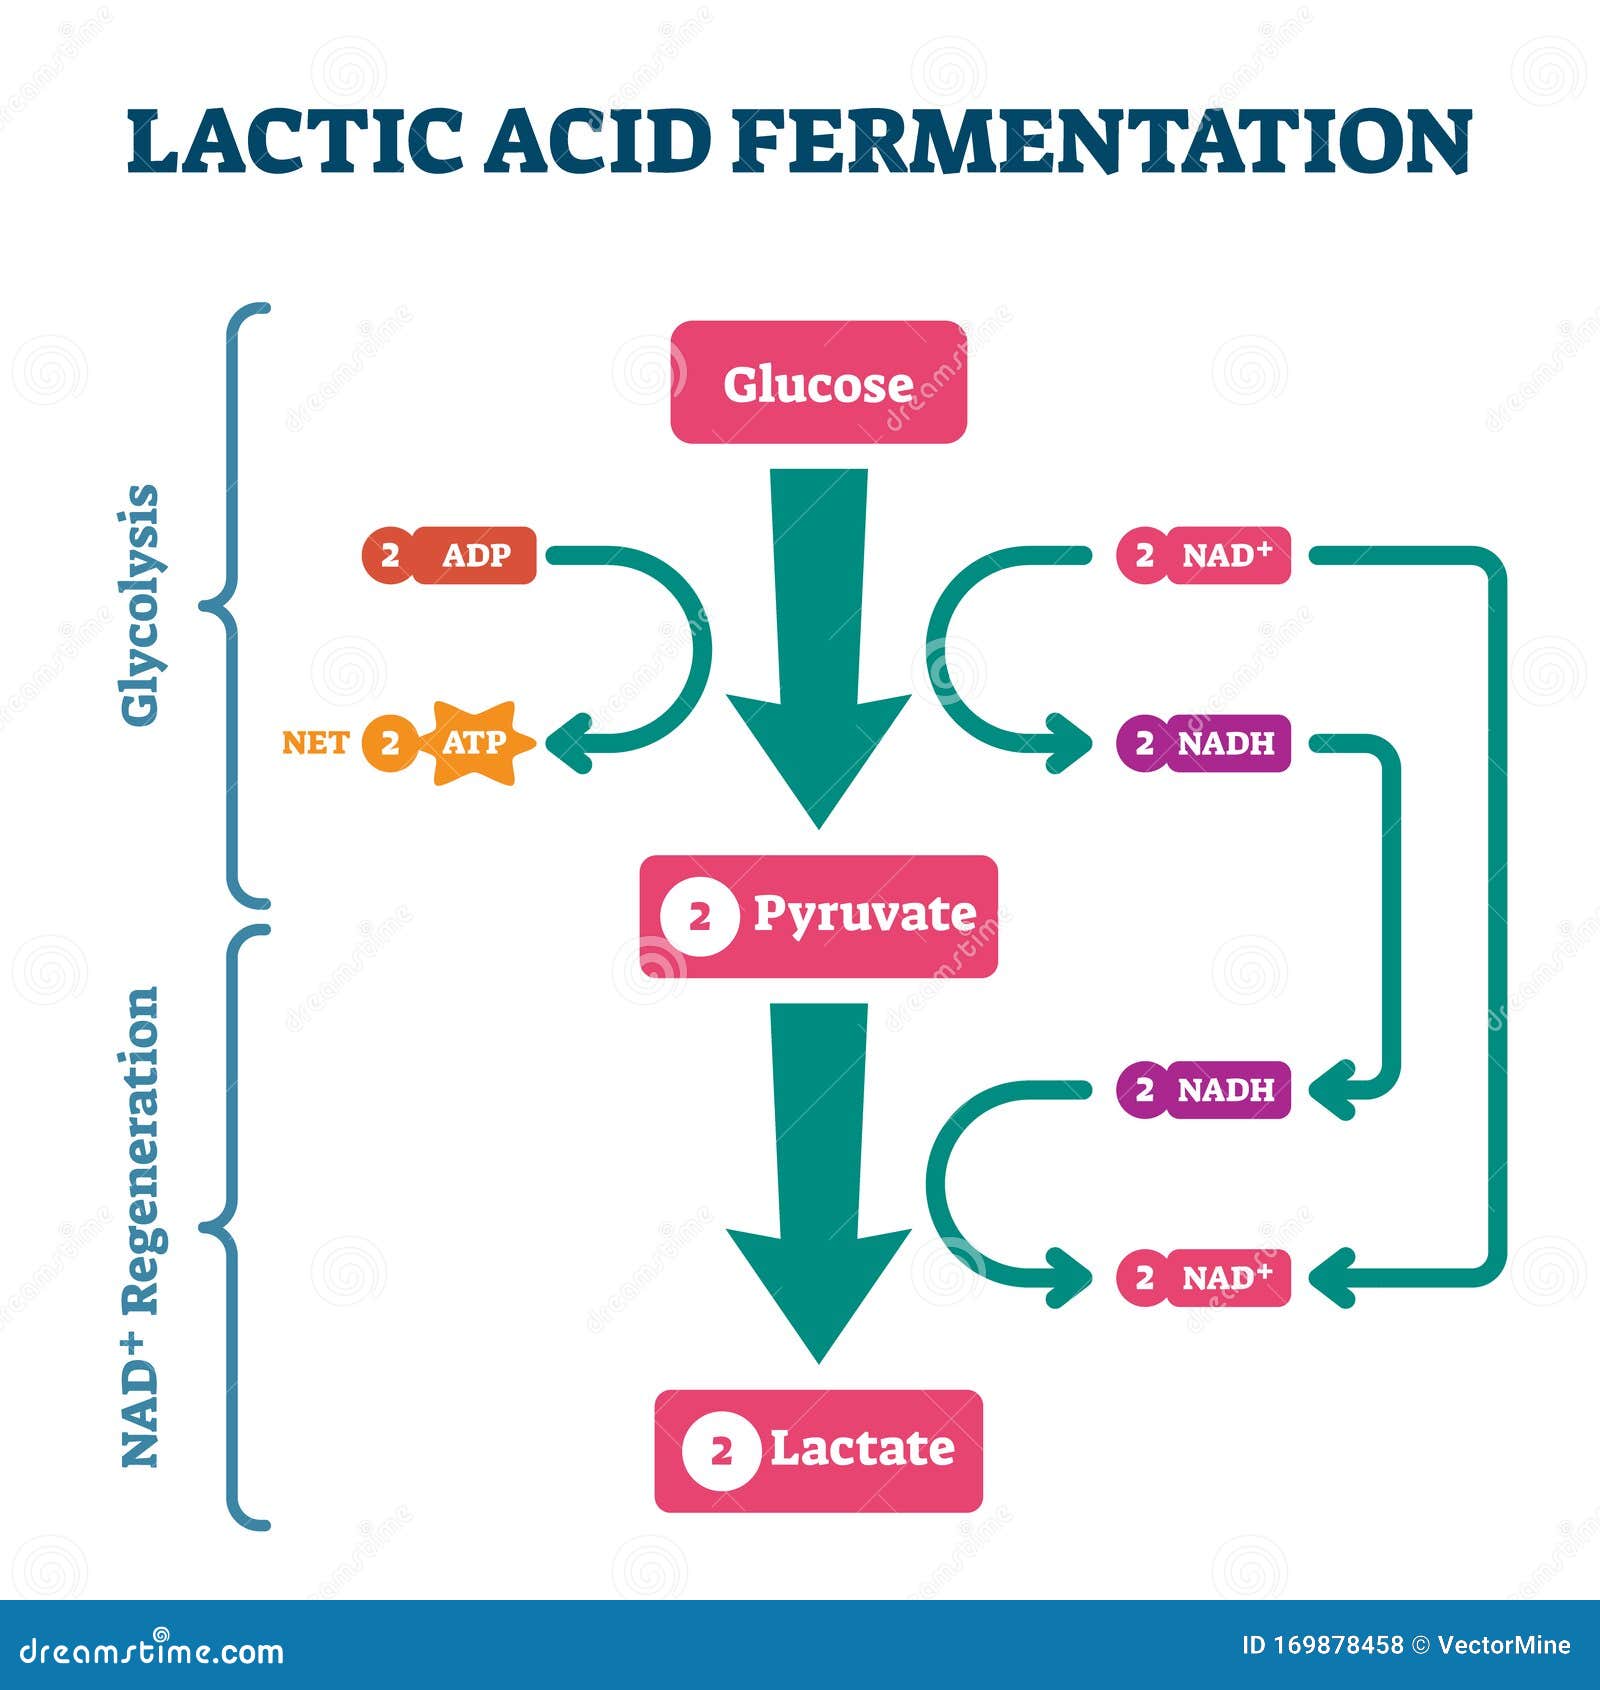 lactic acid fermentation process scheme, labeled   diagram